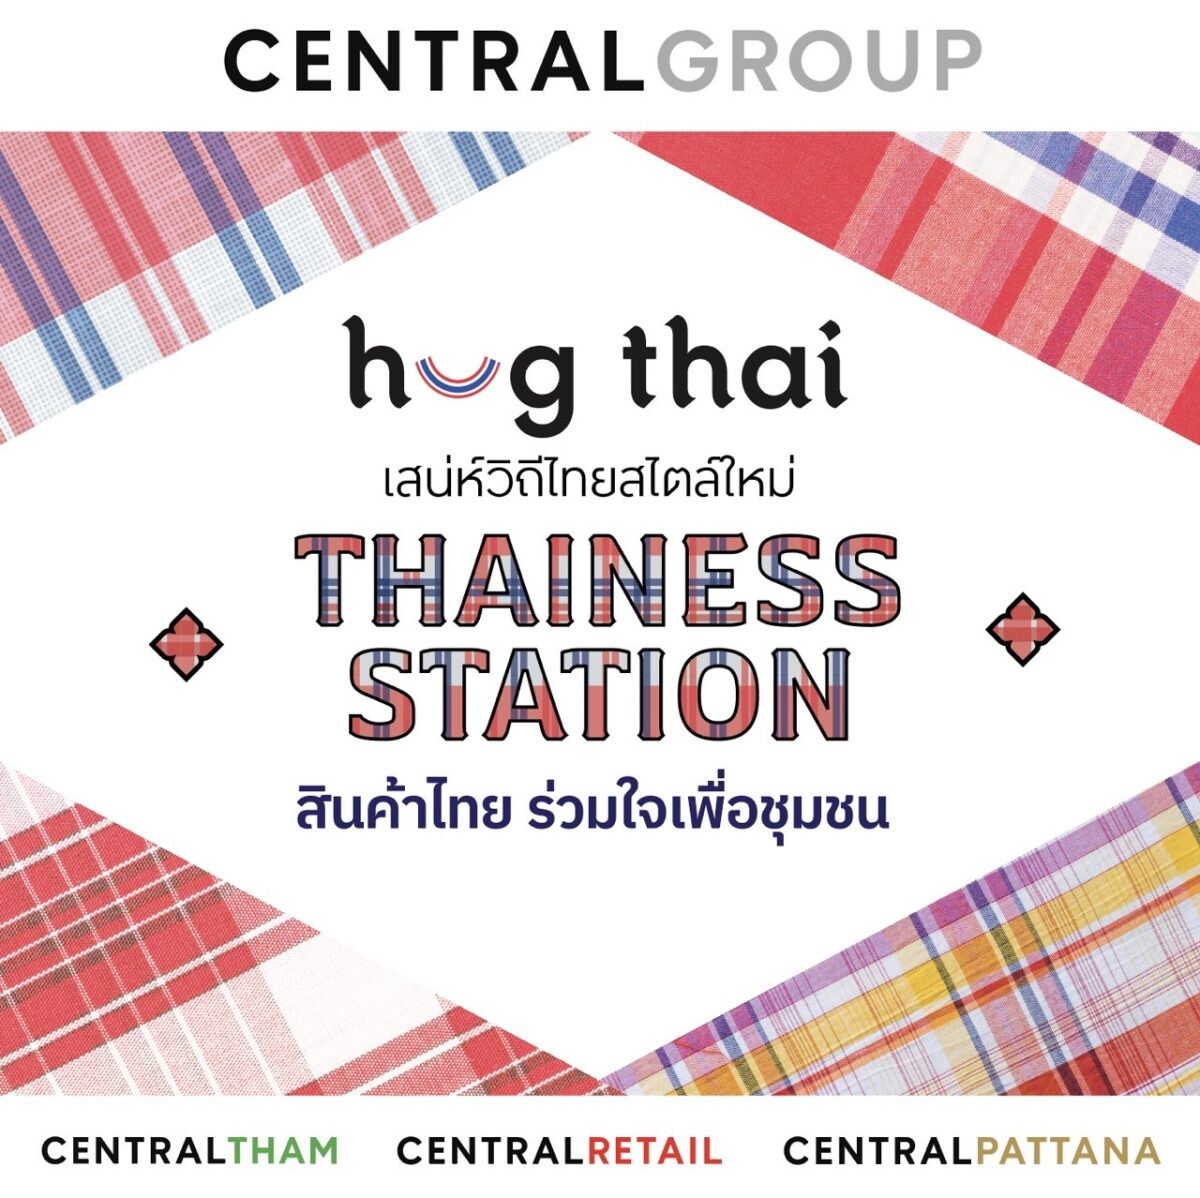 กลุ่มเซ็นทรัล และบริษัทในเครือ เปิดโครงการ "ฮักไทย เสน่ห์วิถีไทยสไตล์ใหม่ Thainess Station สินค้าไทย ร่วมใจเพื่อชุมชน" ผลักดันและยกระดับสินค้าท้องถิ่นไทยสู่ตลาดโลก